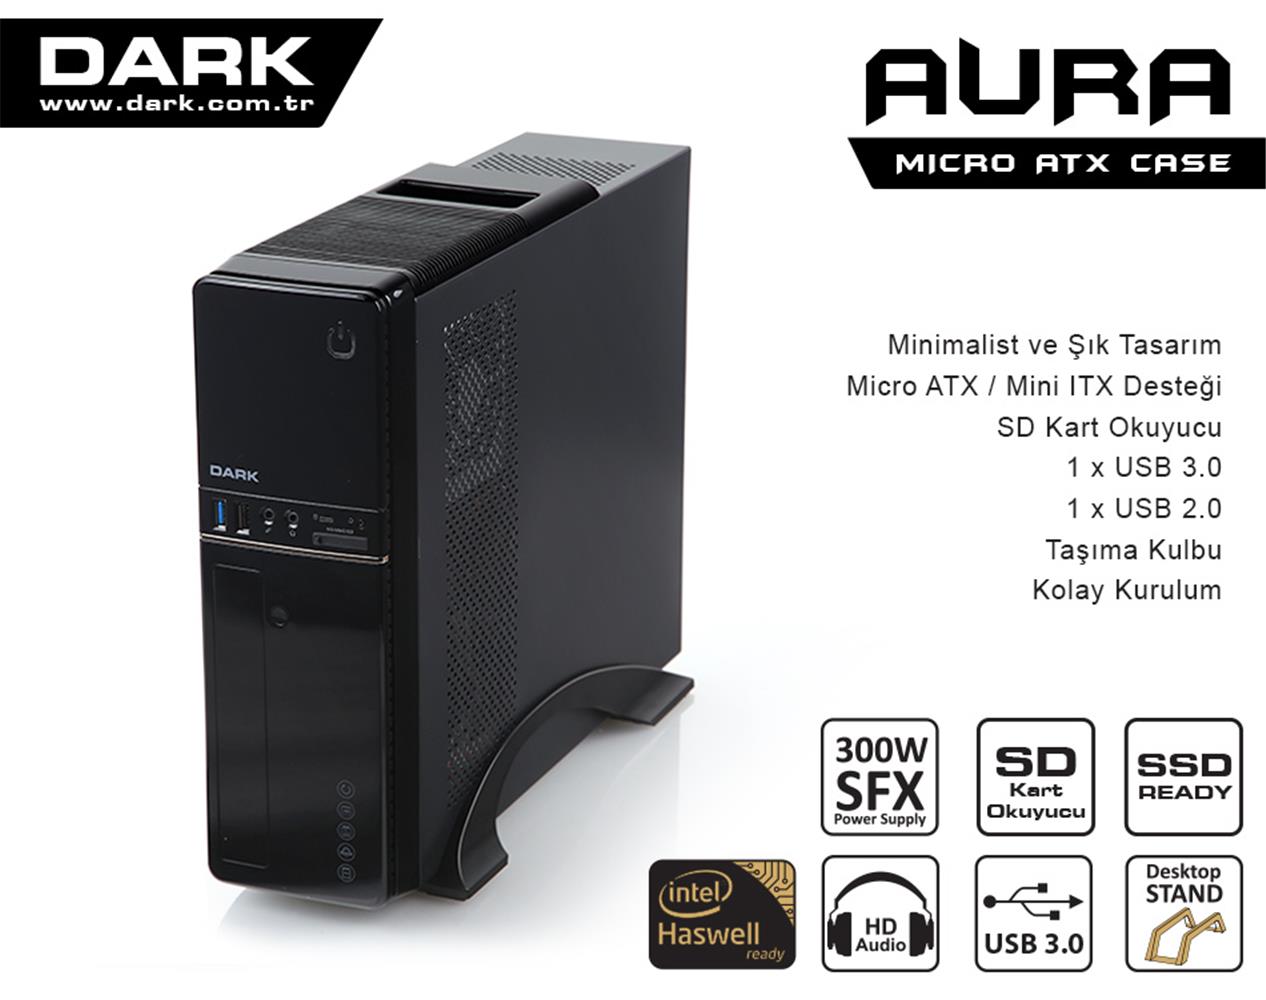 DARK AURA 300W USB3.0. KART OKUYUCULU.MICROATX - MINI ITX KASA